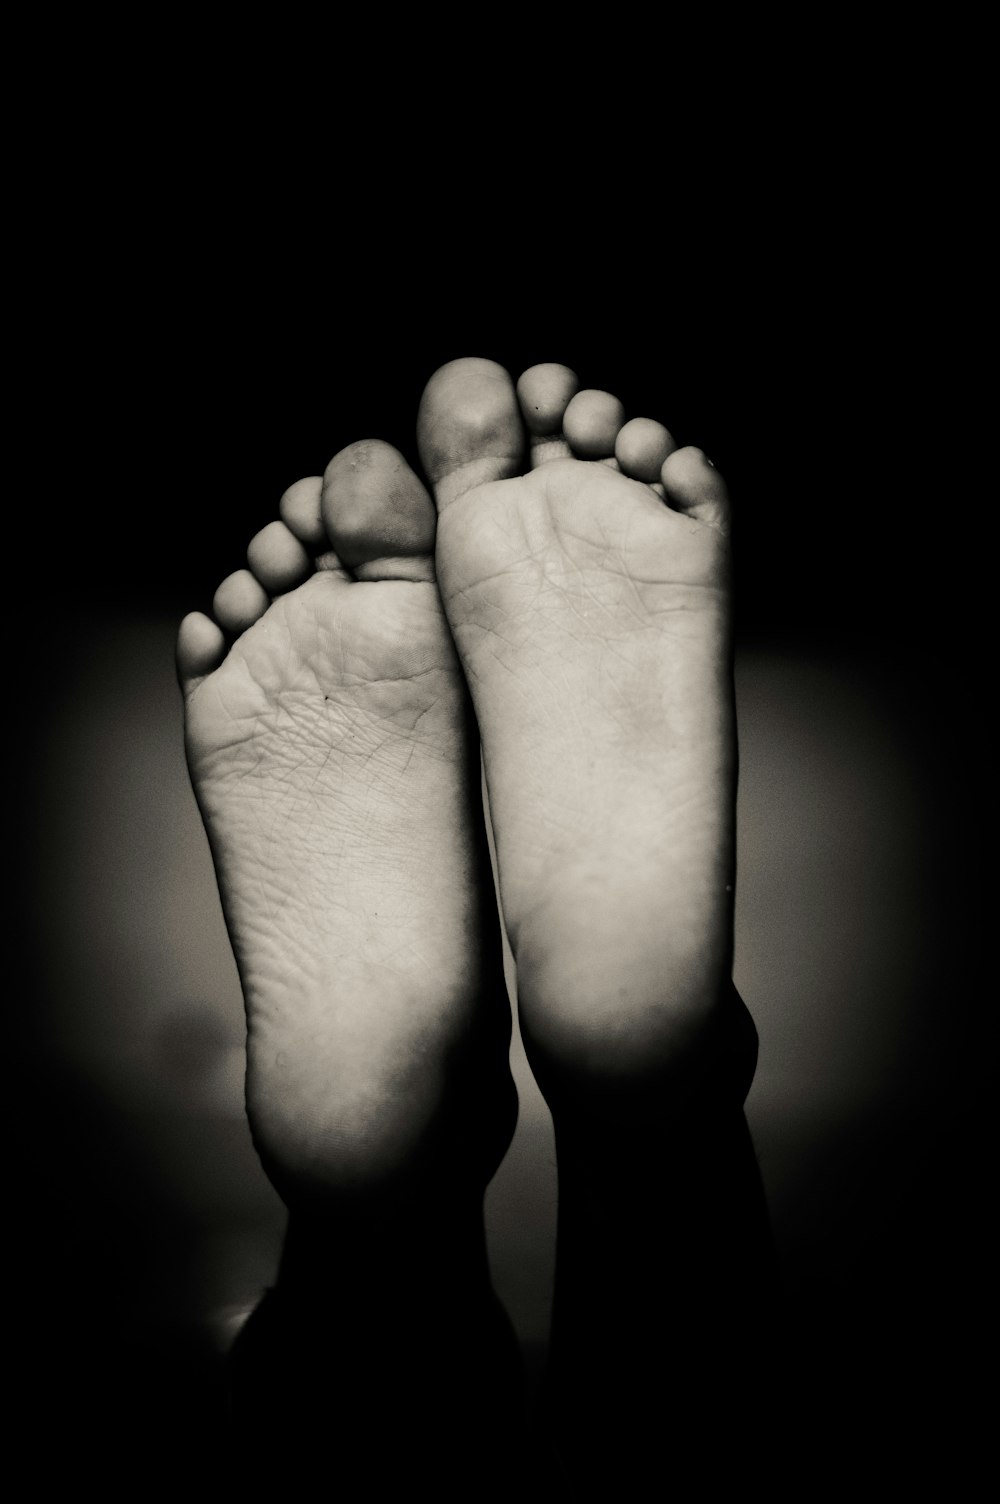 foto in scala di grigi di piedi umani